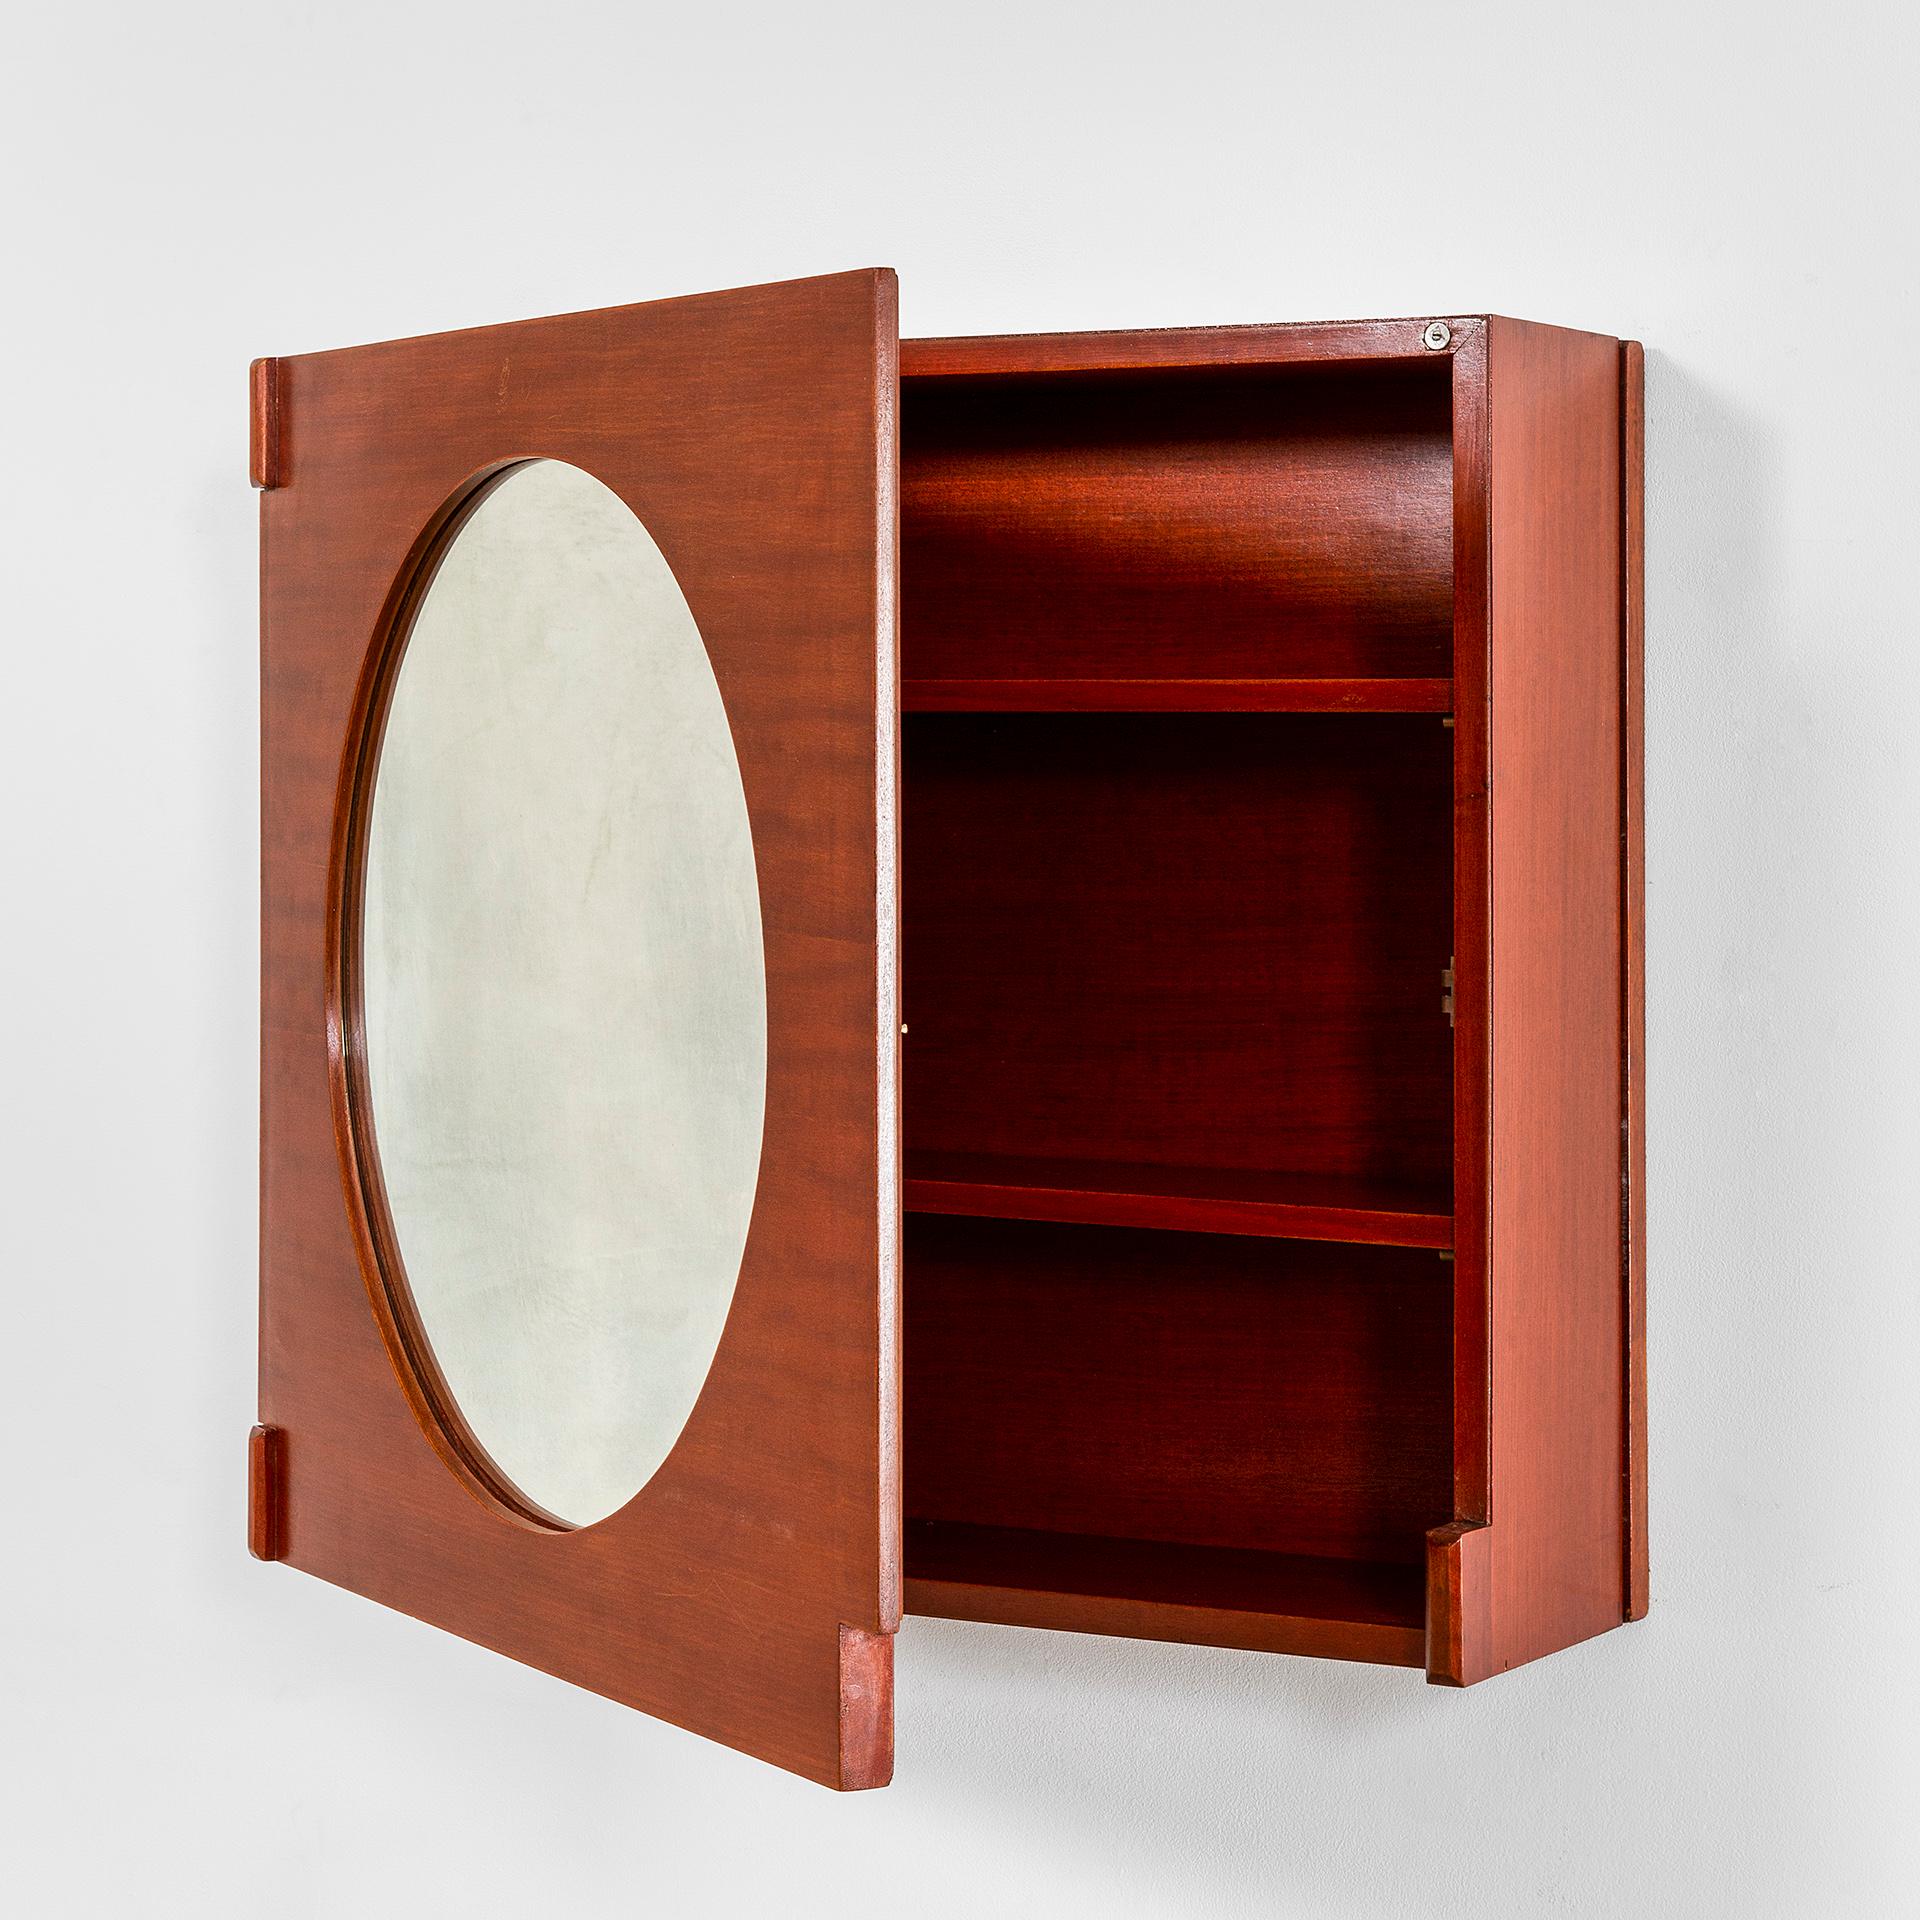 italien Meuble de rangement en bois avec miroir du 20ème siècle attribué à Ico Parisi avec étagères des années 50